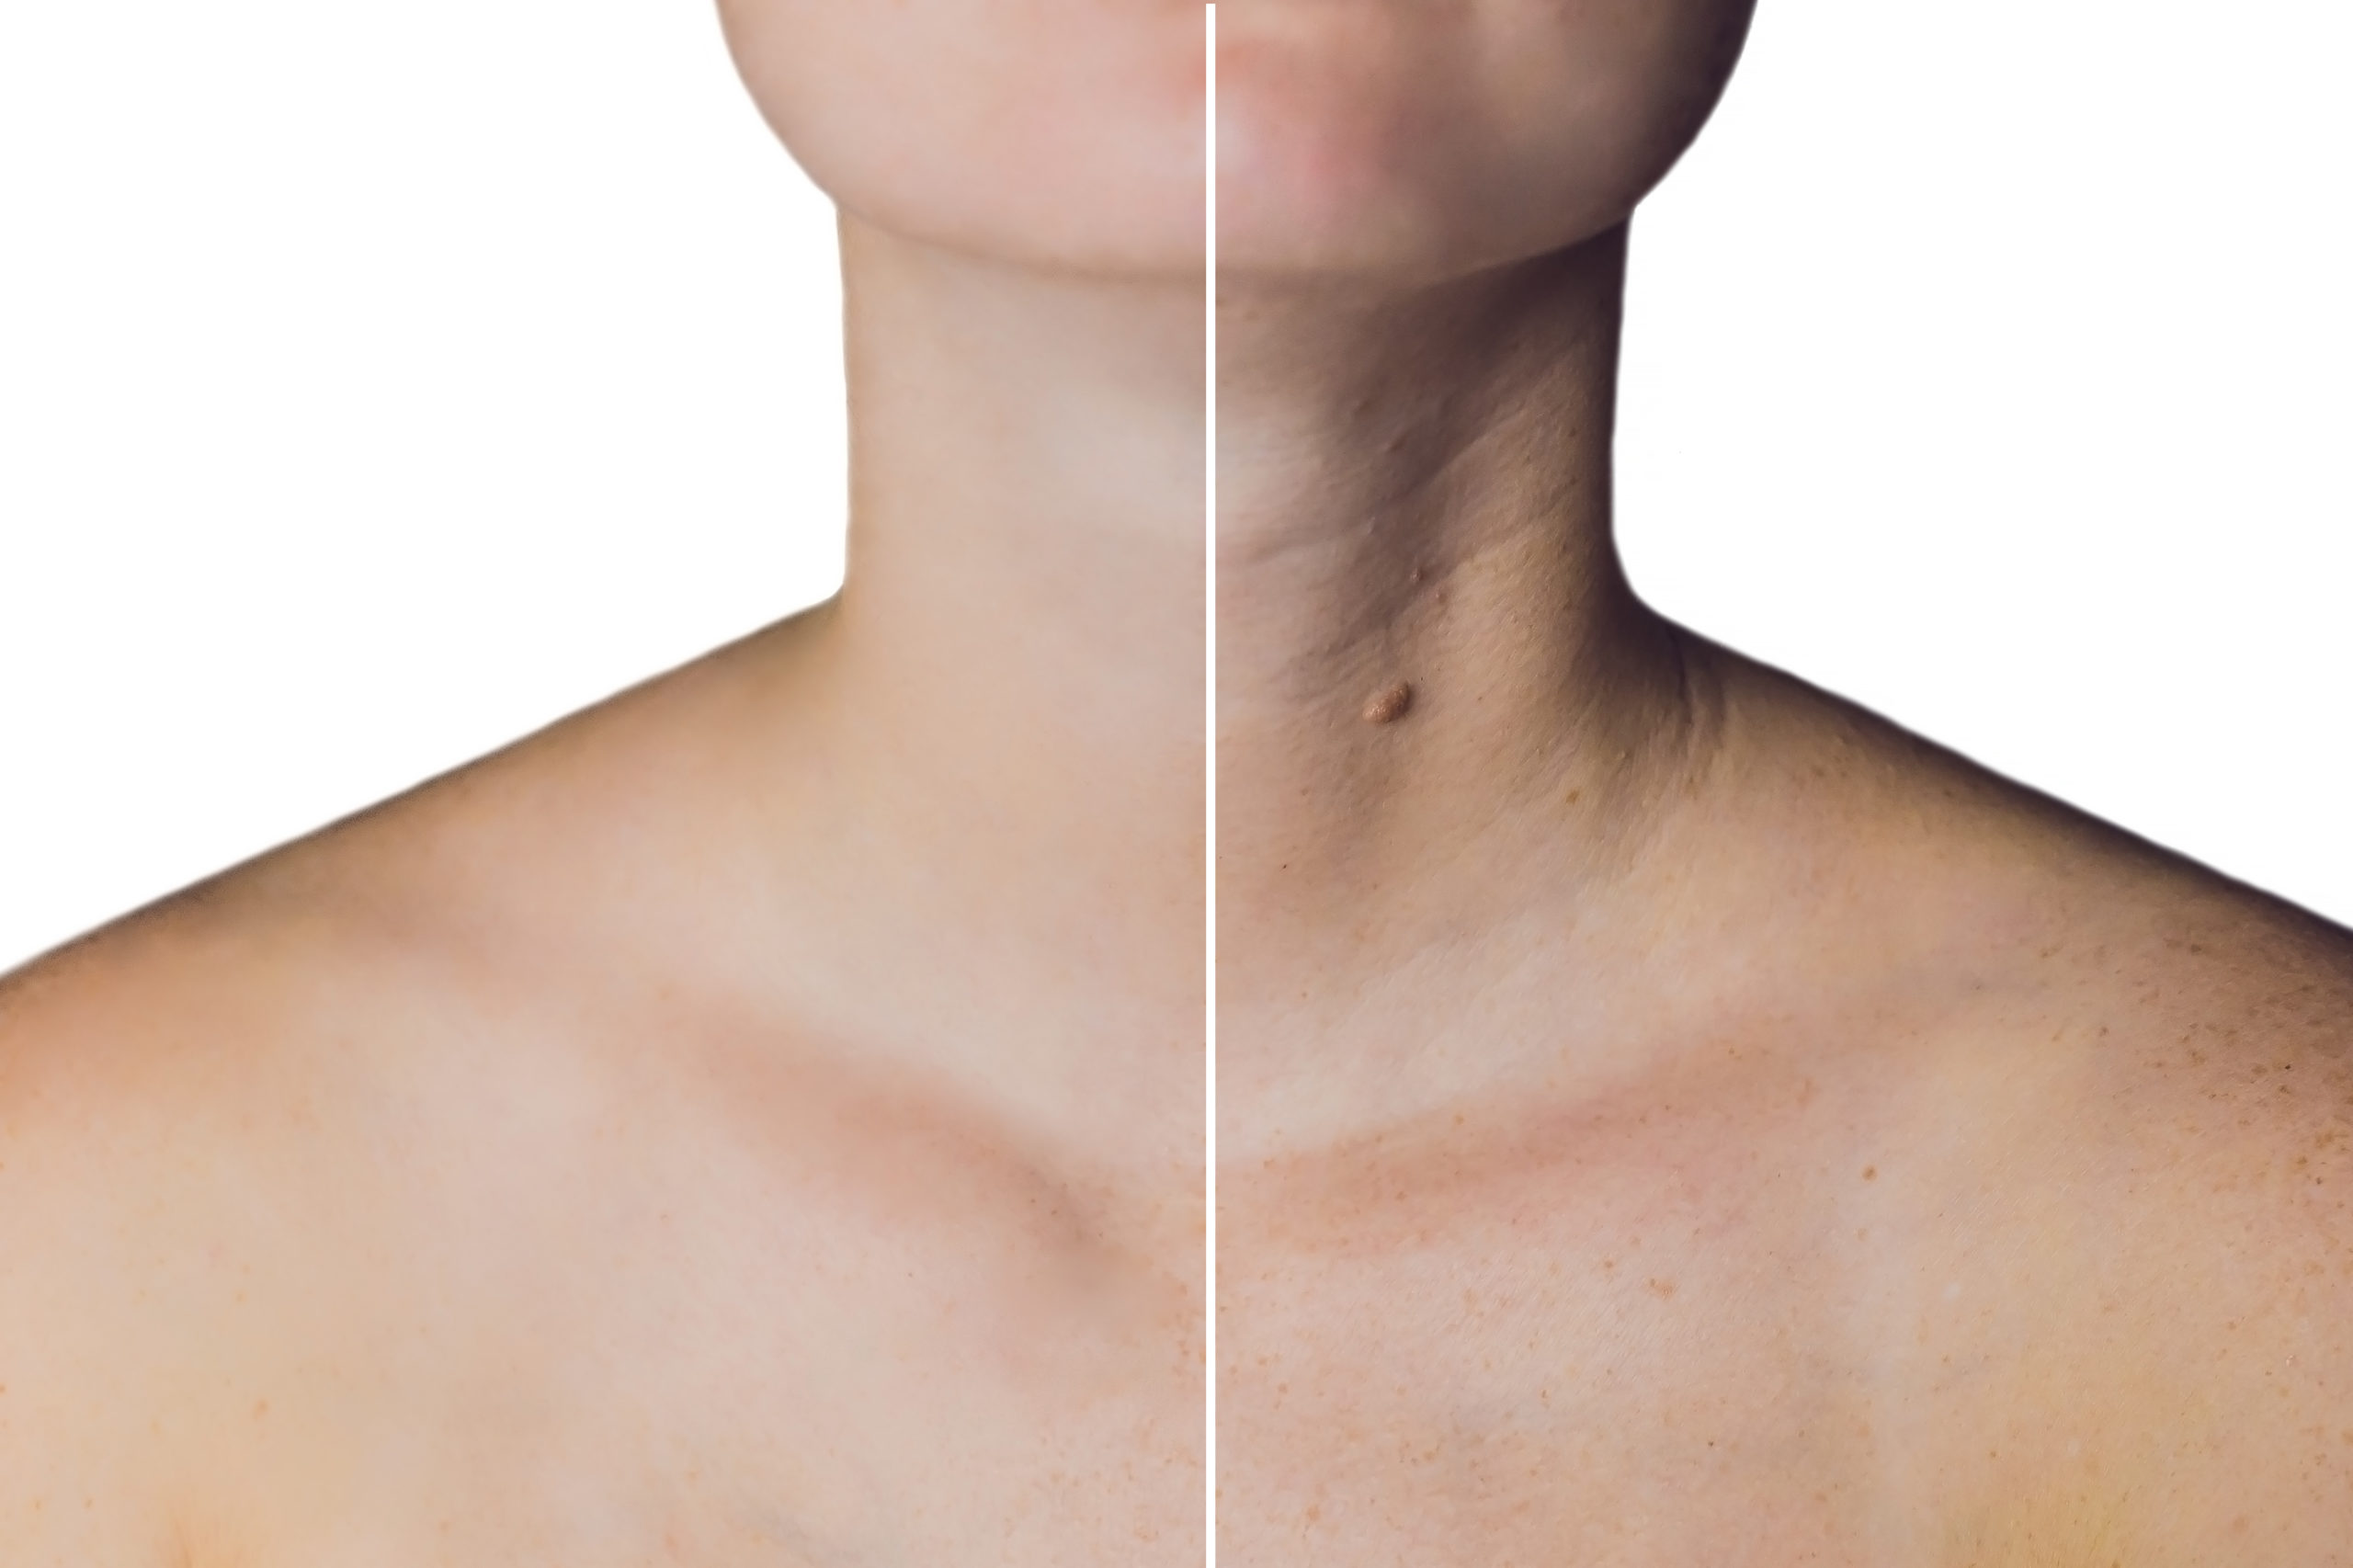 Entenda como o Botox pode recuperar a aparência jovial do seu pescoço sem intervenção cirúrgica.